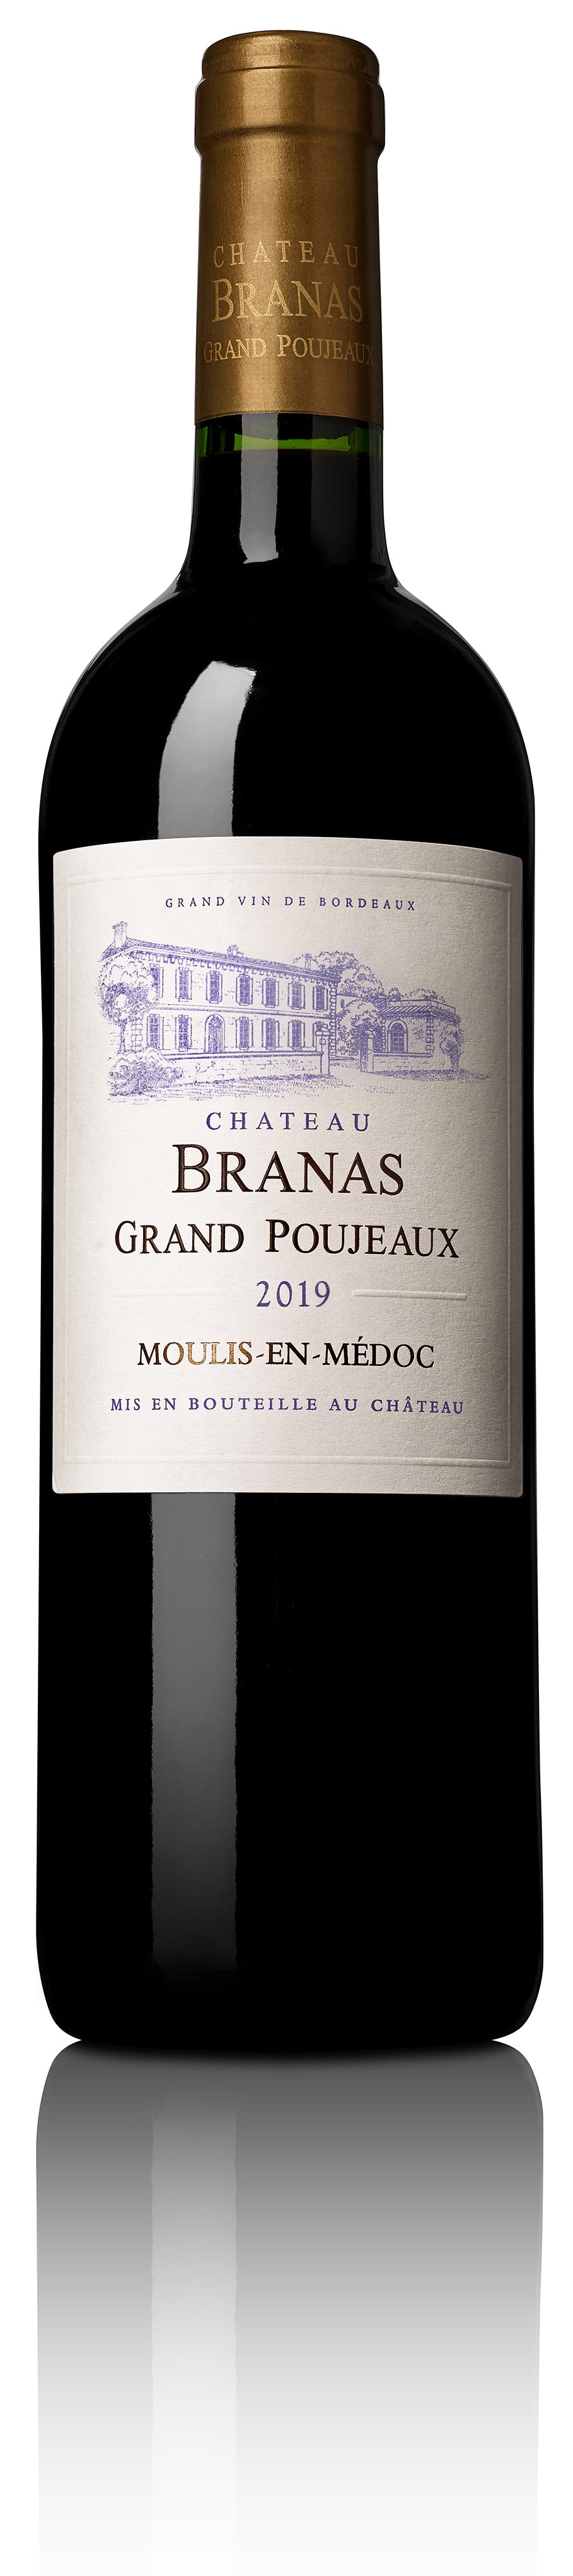 Château Branas Grand Poujeaux 2019